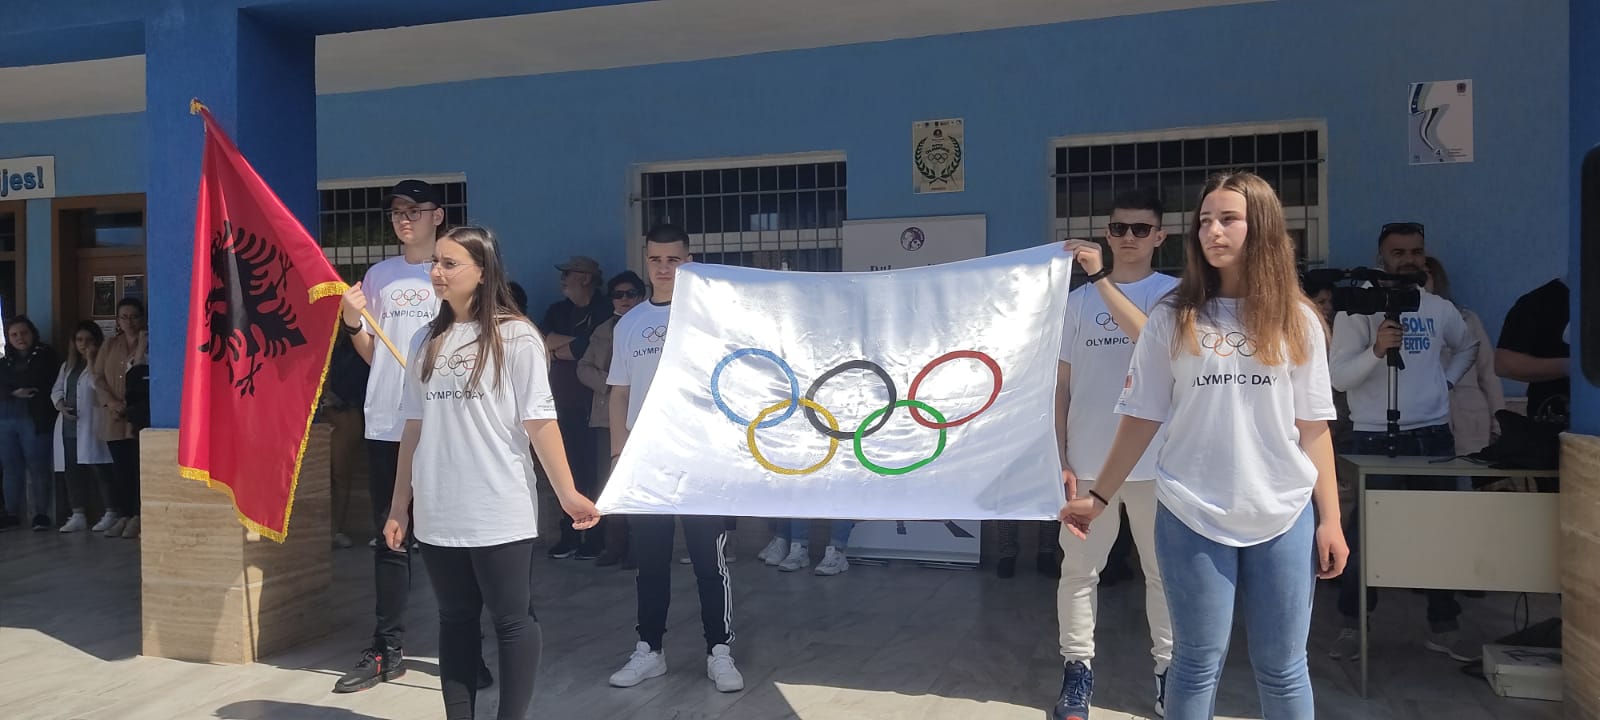 Dita Olimpike në Pogradec 